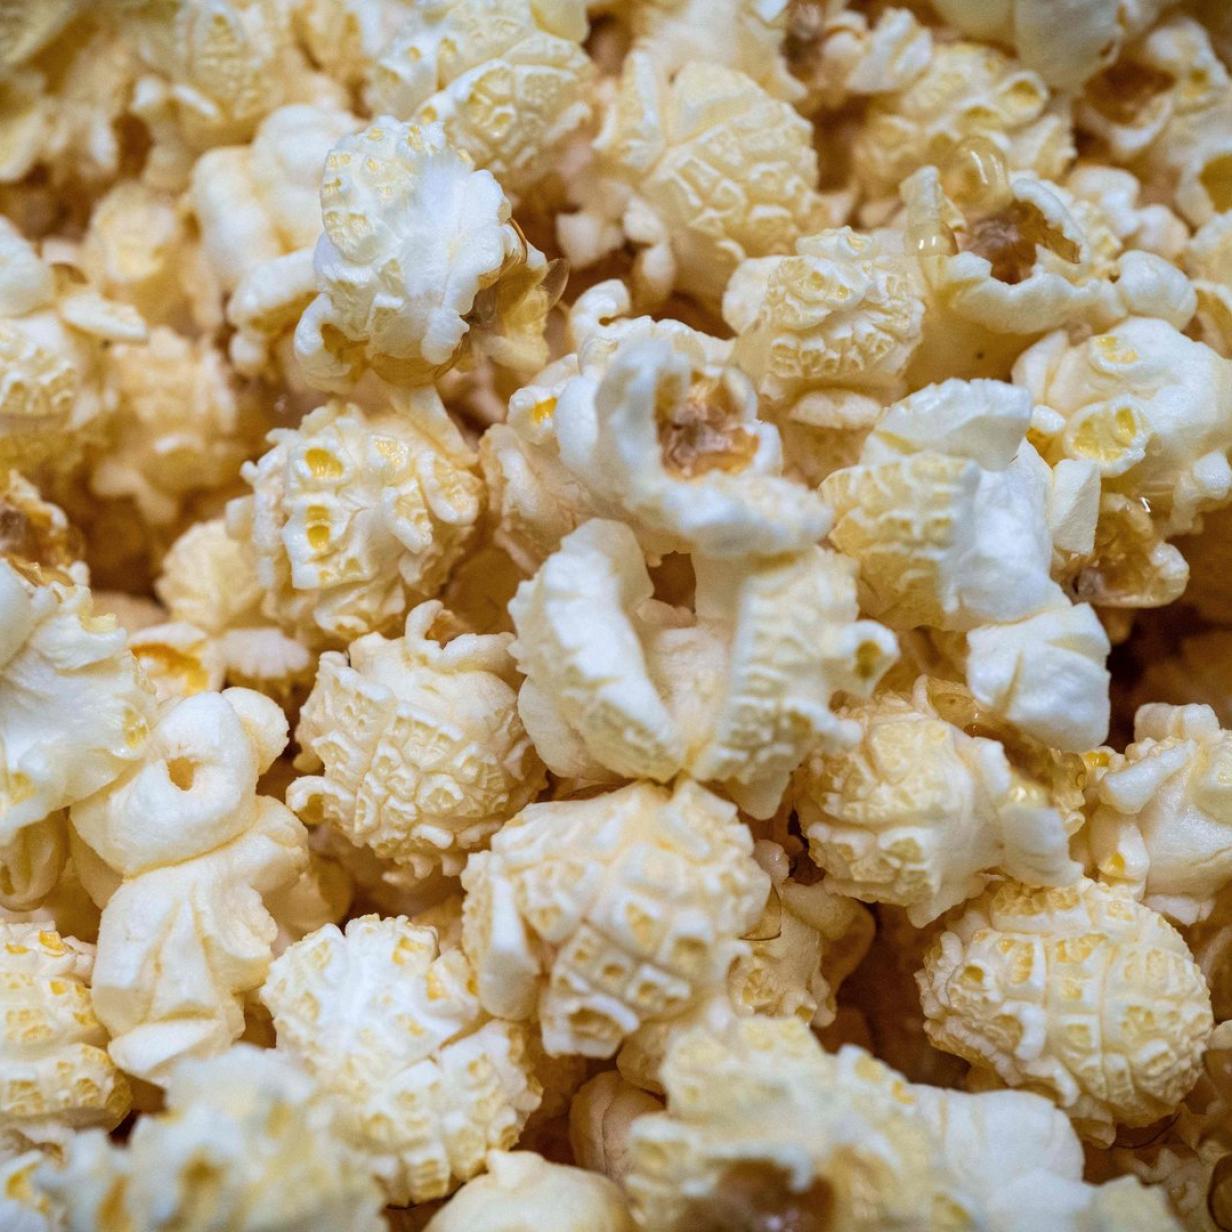 Zu viel Pestizid im Popcorn: Produkte Lidl bei Mehrere zurückgerufen